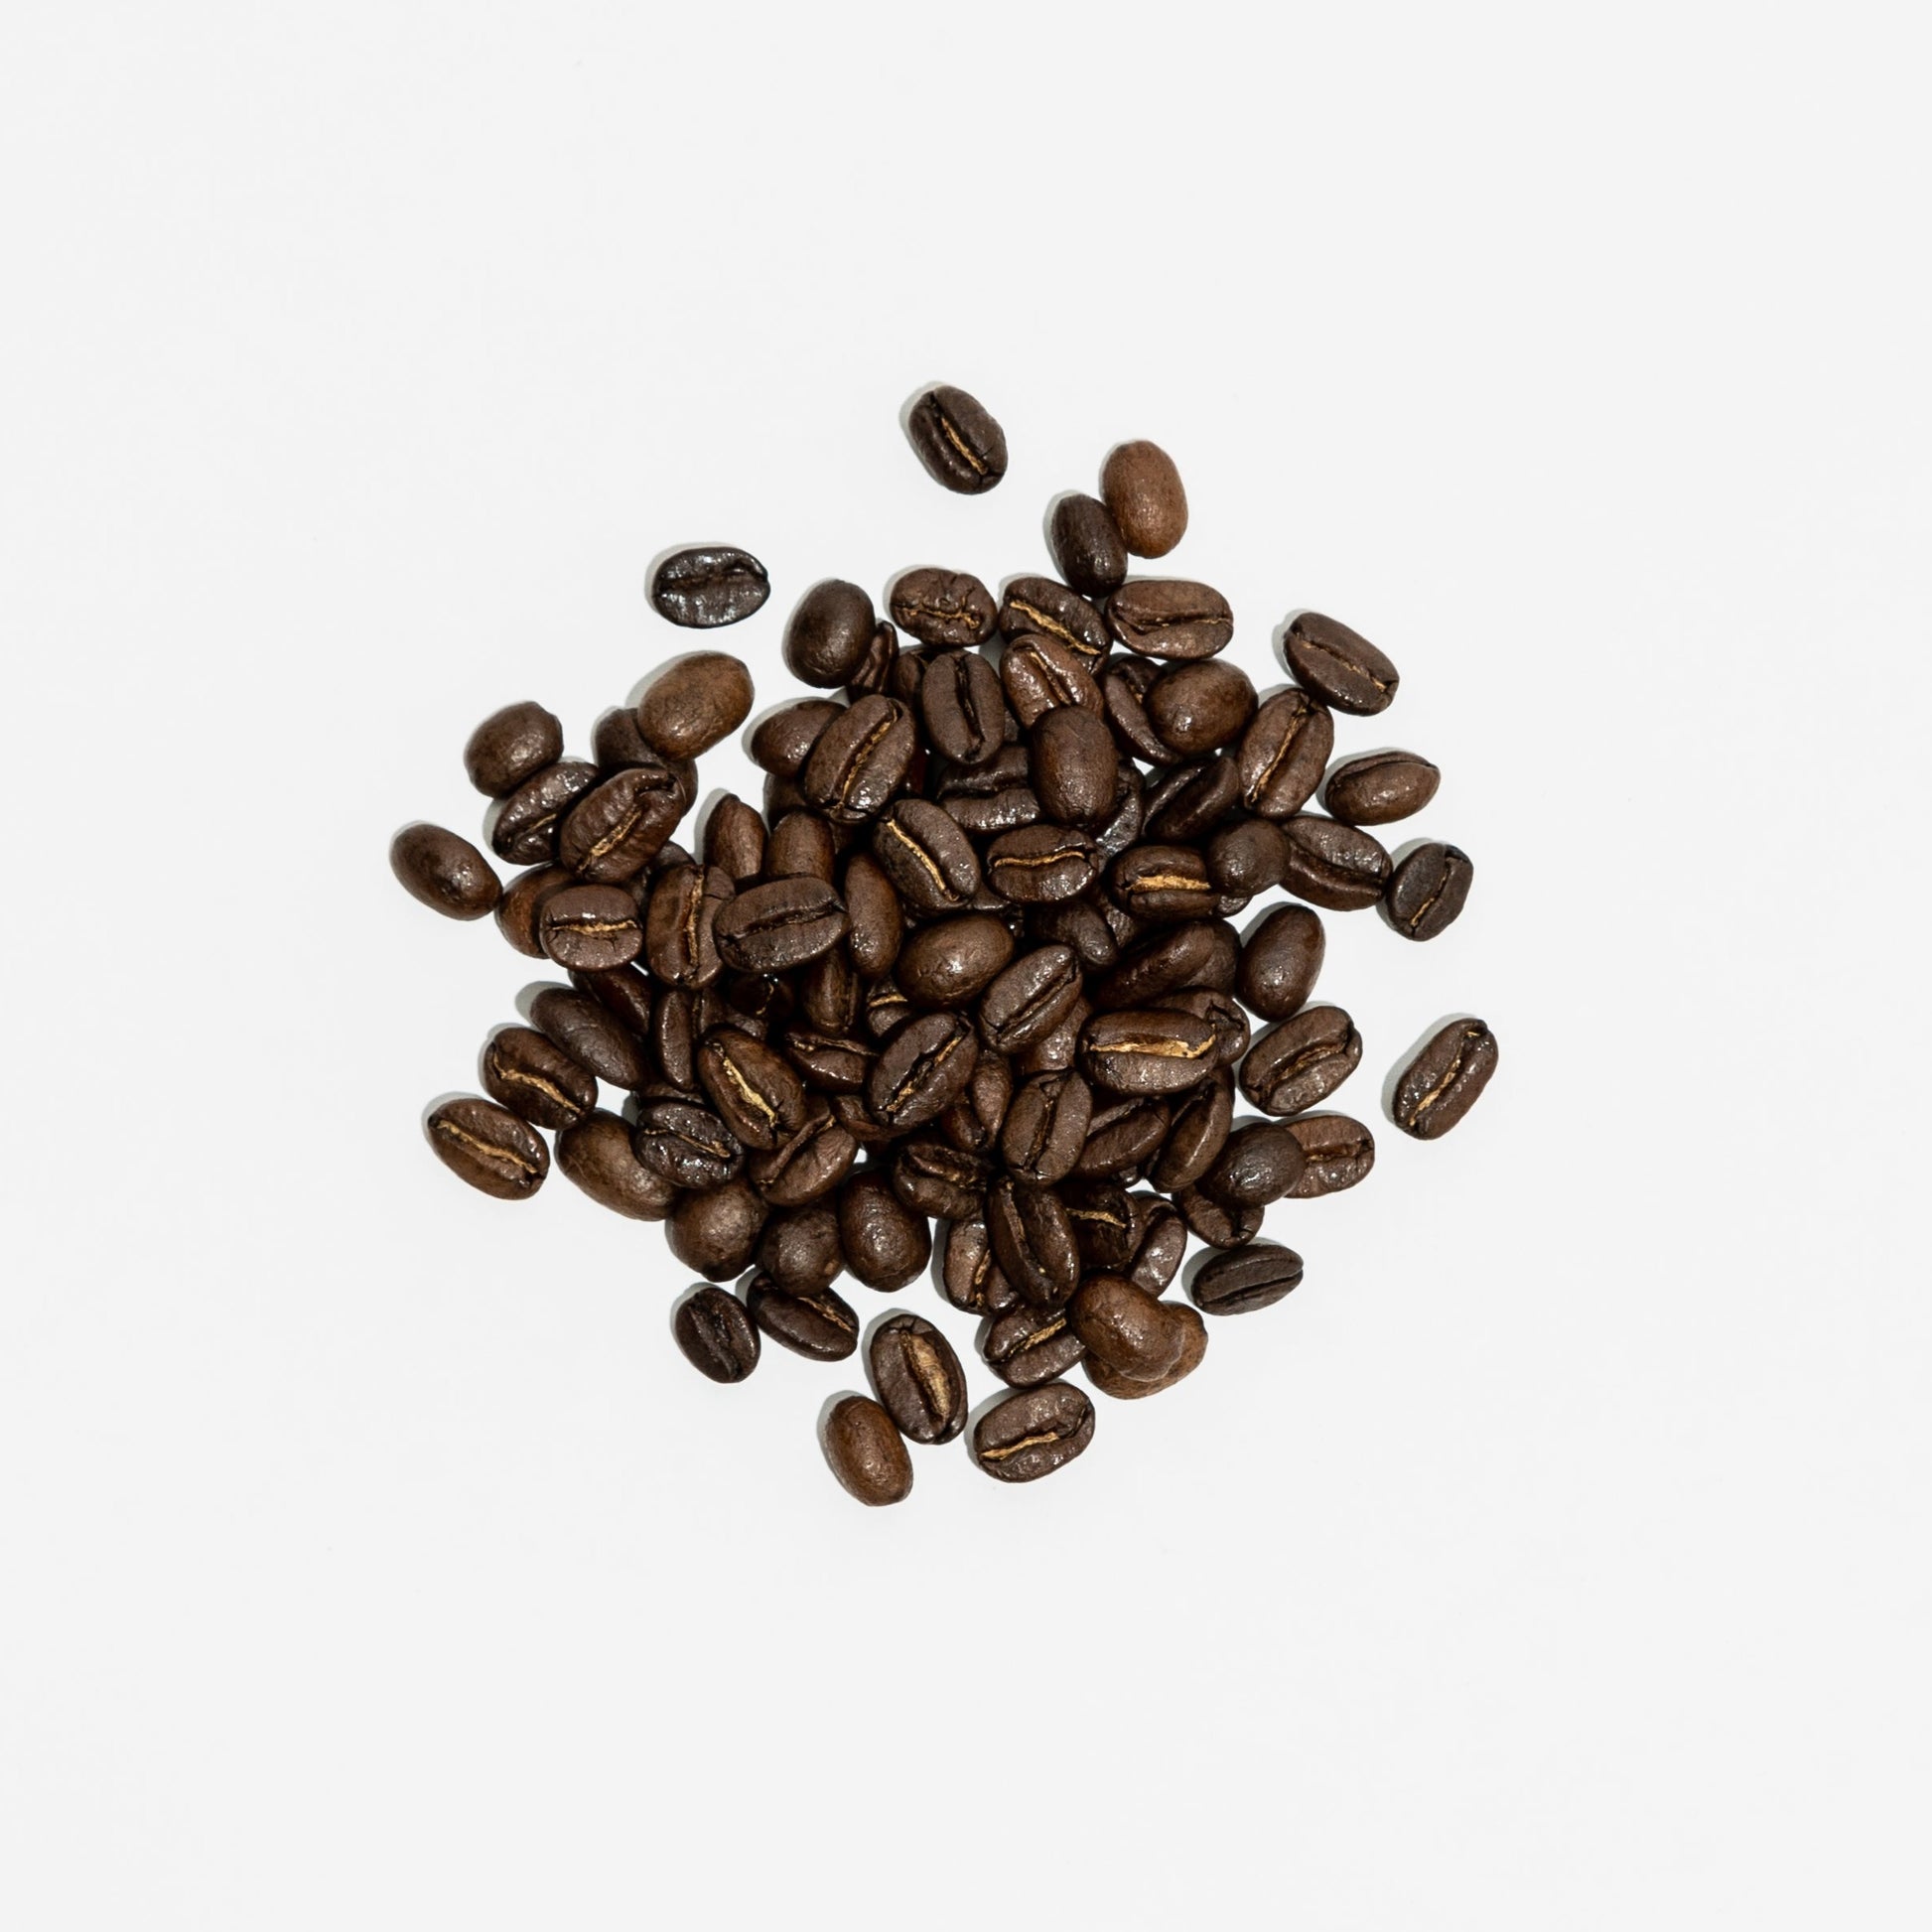 MEDIUM ROAST WHISKEY BARREL COFFEE Barrel Aged Coffee Beans